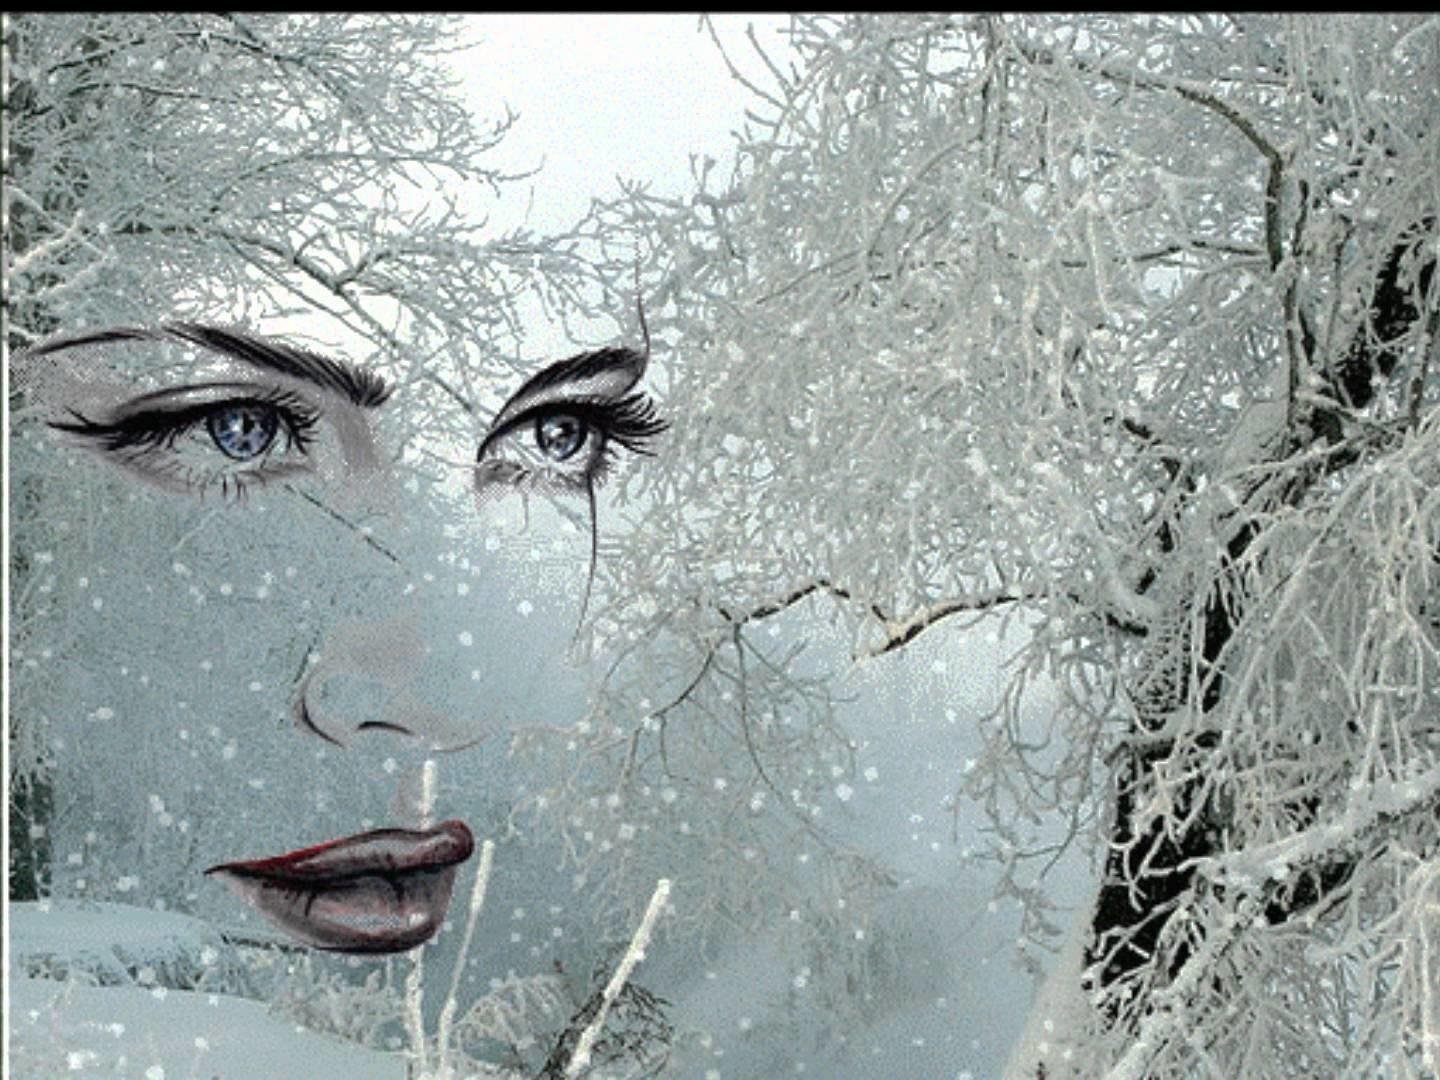 Наступила холодная пора. Женщина в метель. Весенняя метель. Снег на ресницах. Женщина вьюга.